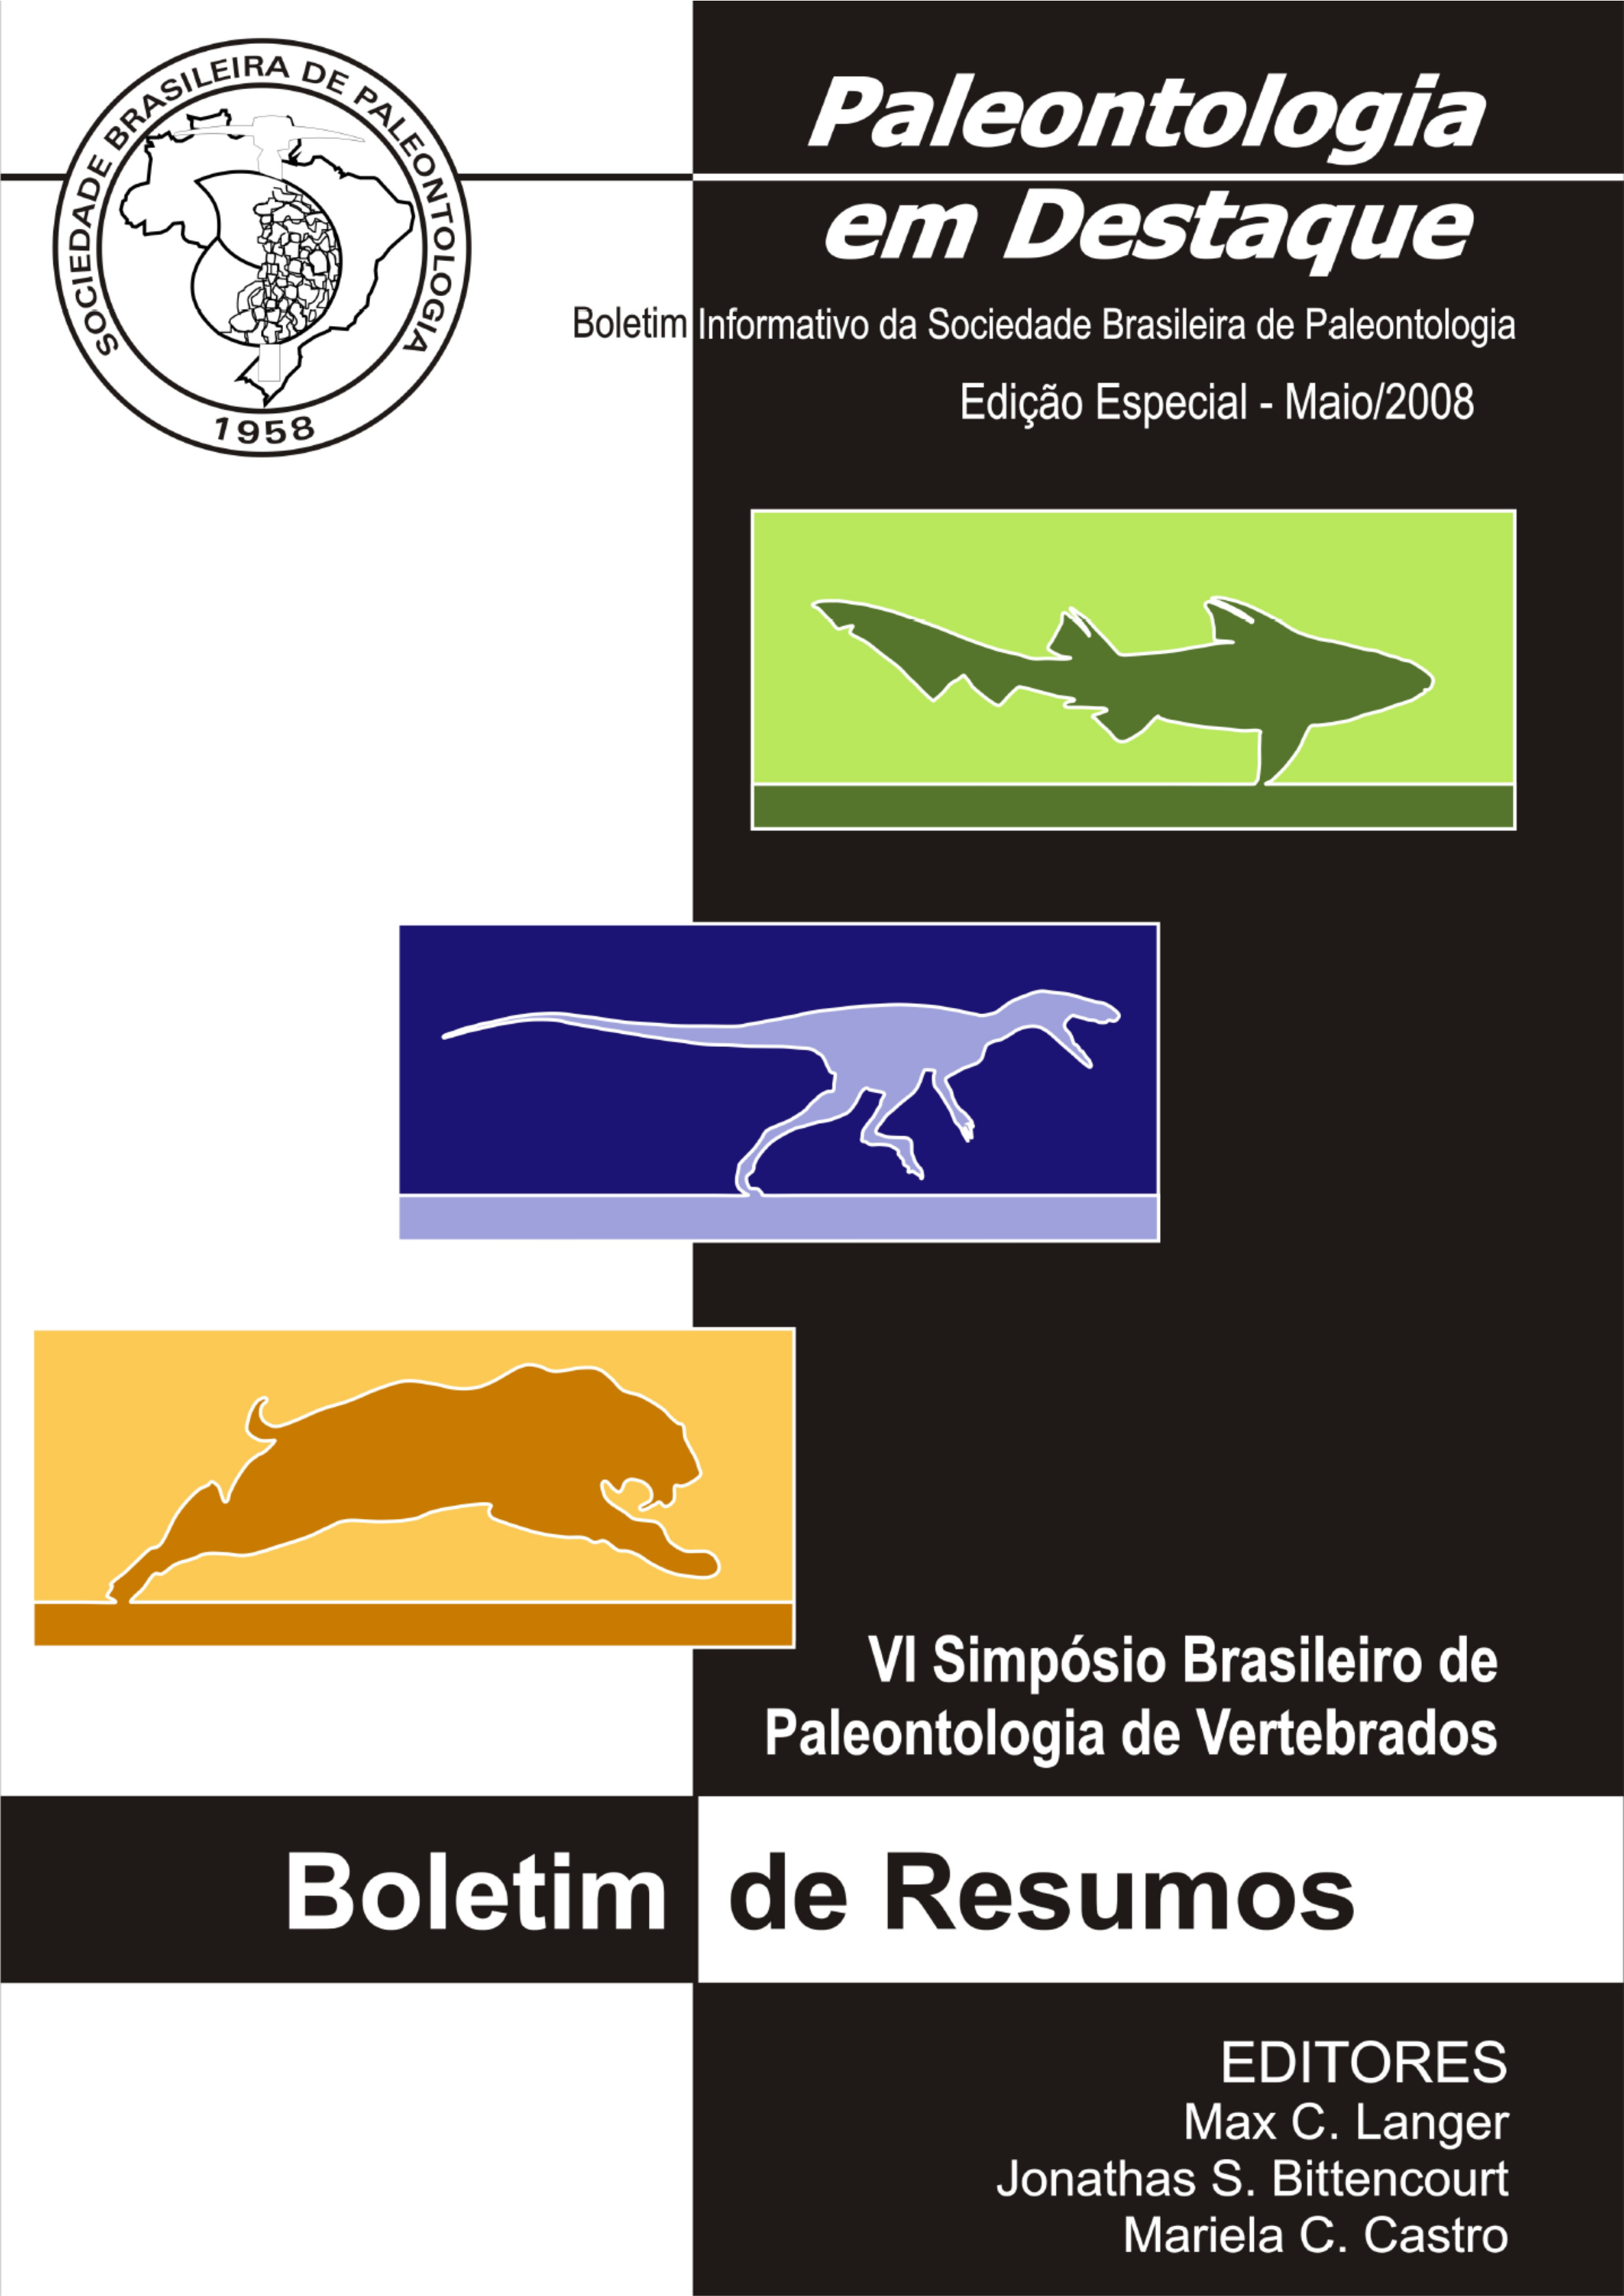 					View Vol. 23 No. Edição Especial (2008): Abstract  VI Simpósio Brasileiro Paleontologia de Vertebrados 2008
				